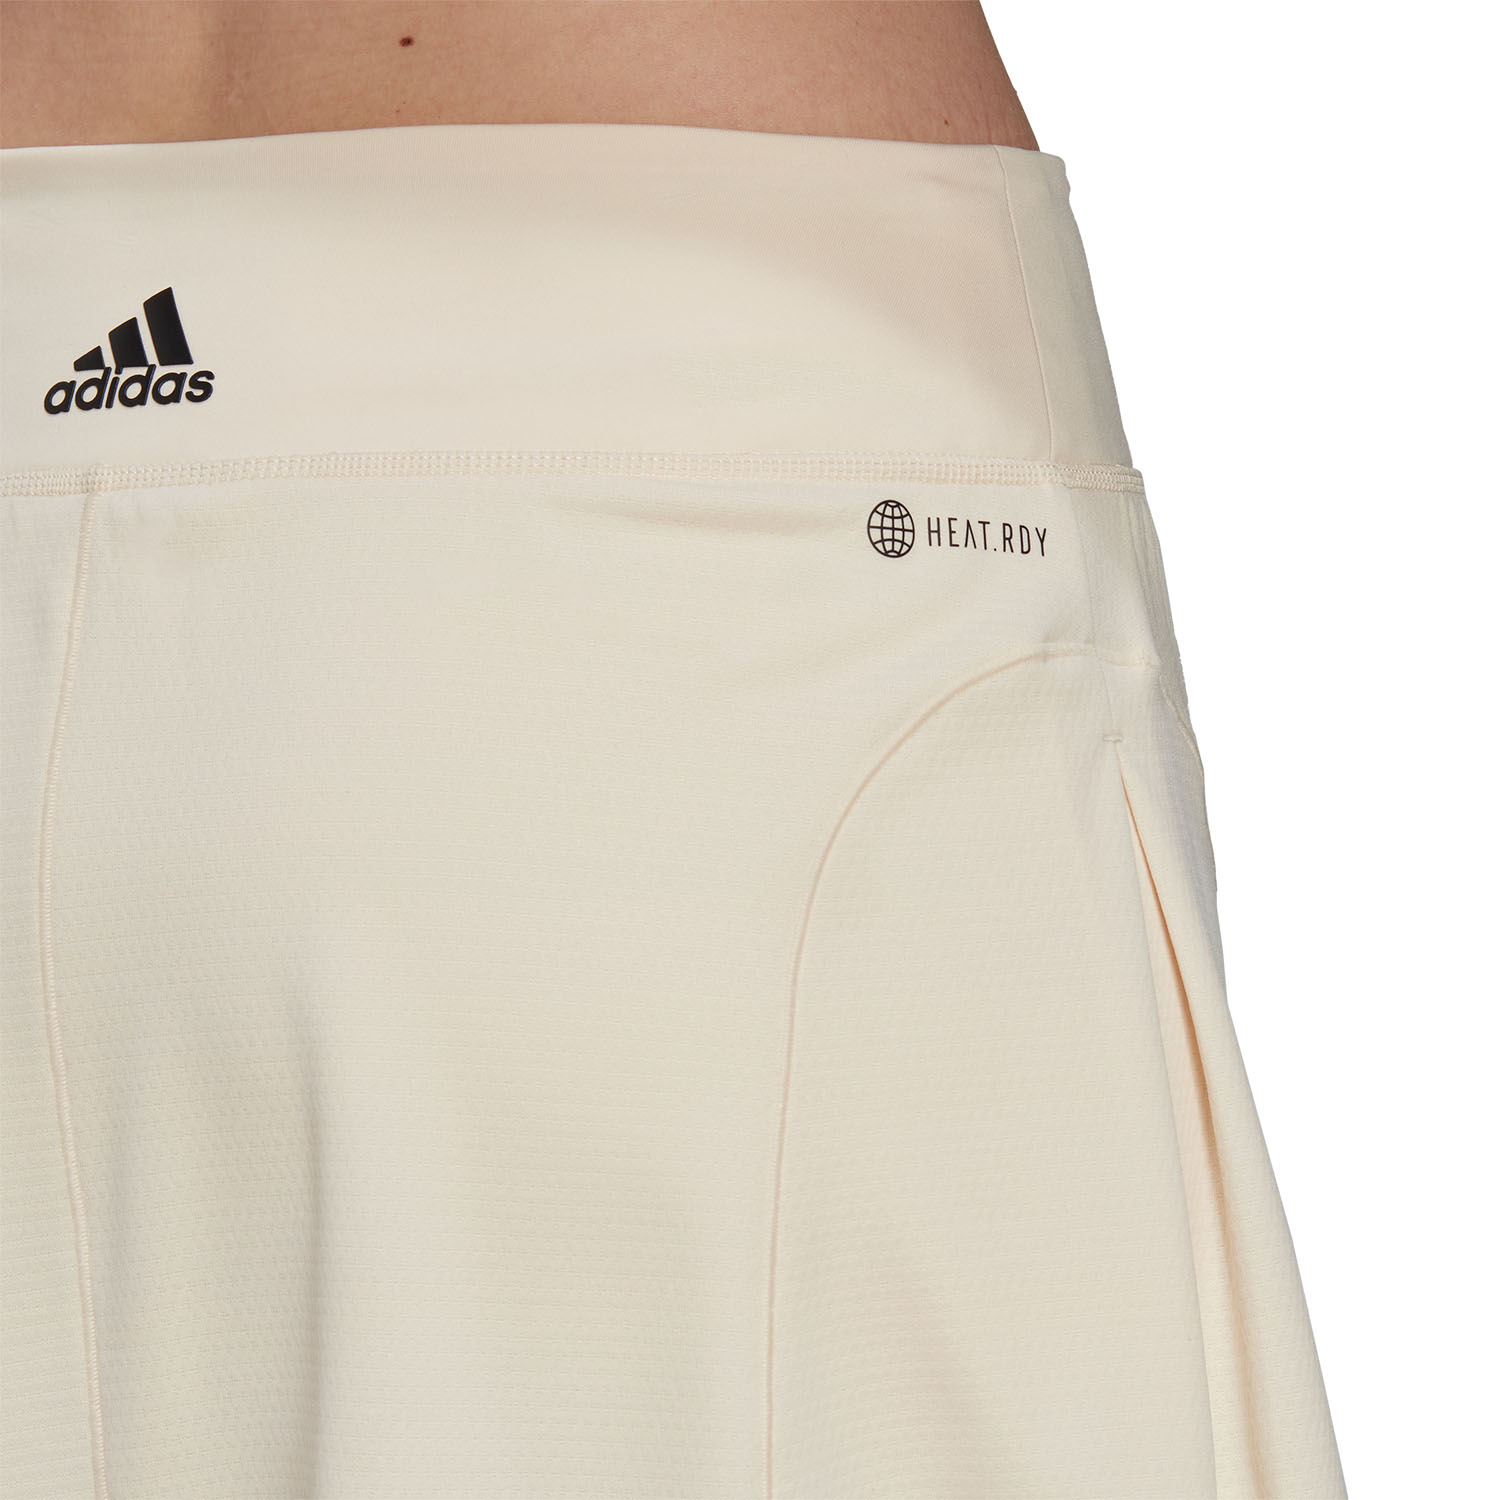 adidas Match Skirt - Ecru Tint